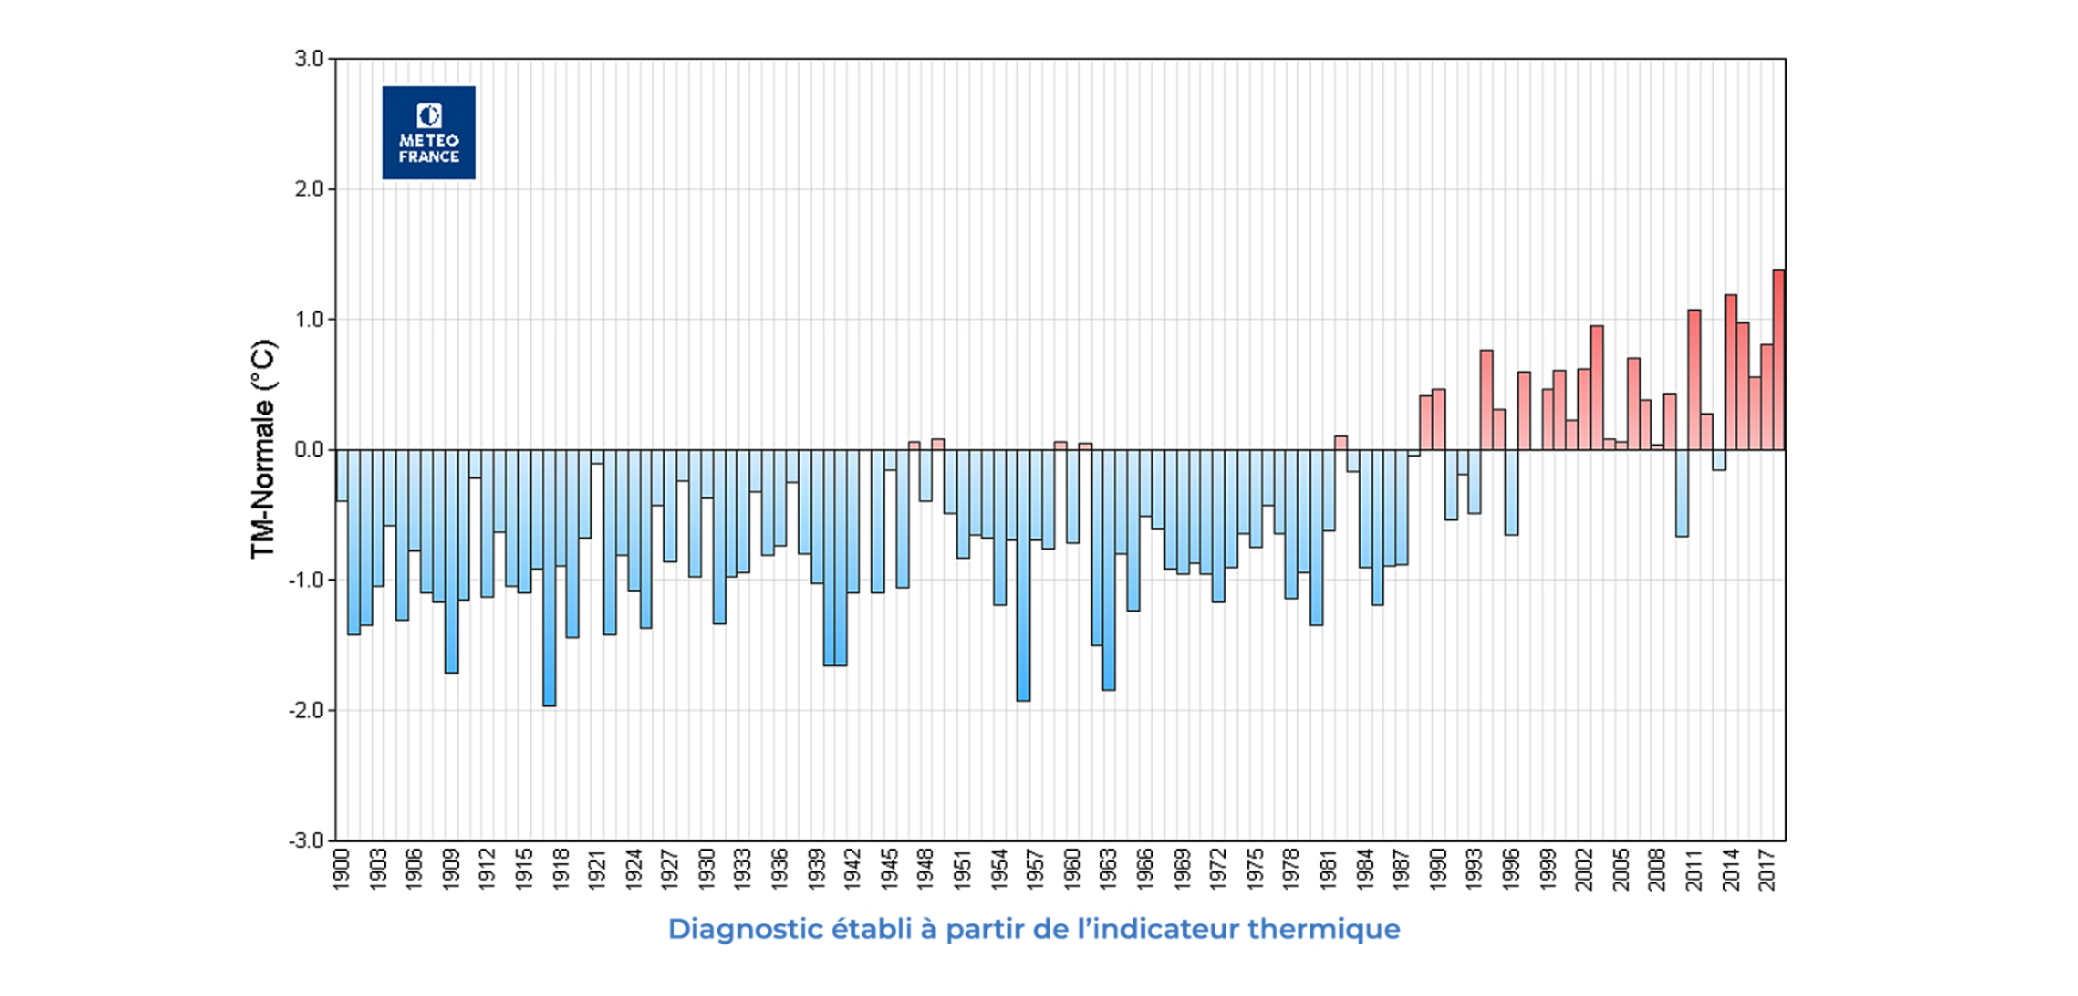 Écart à la normale 1981-2010 des températures moyennes de 1900 à 2018